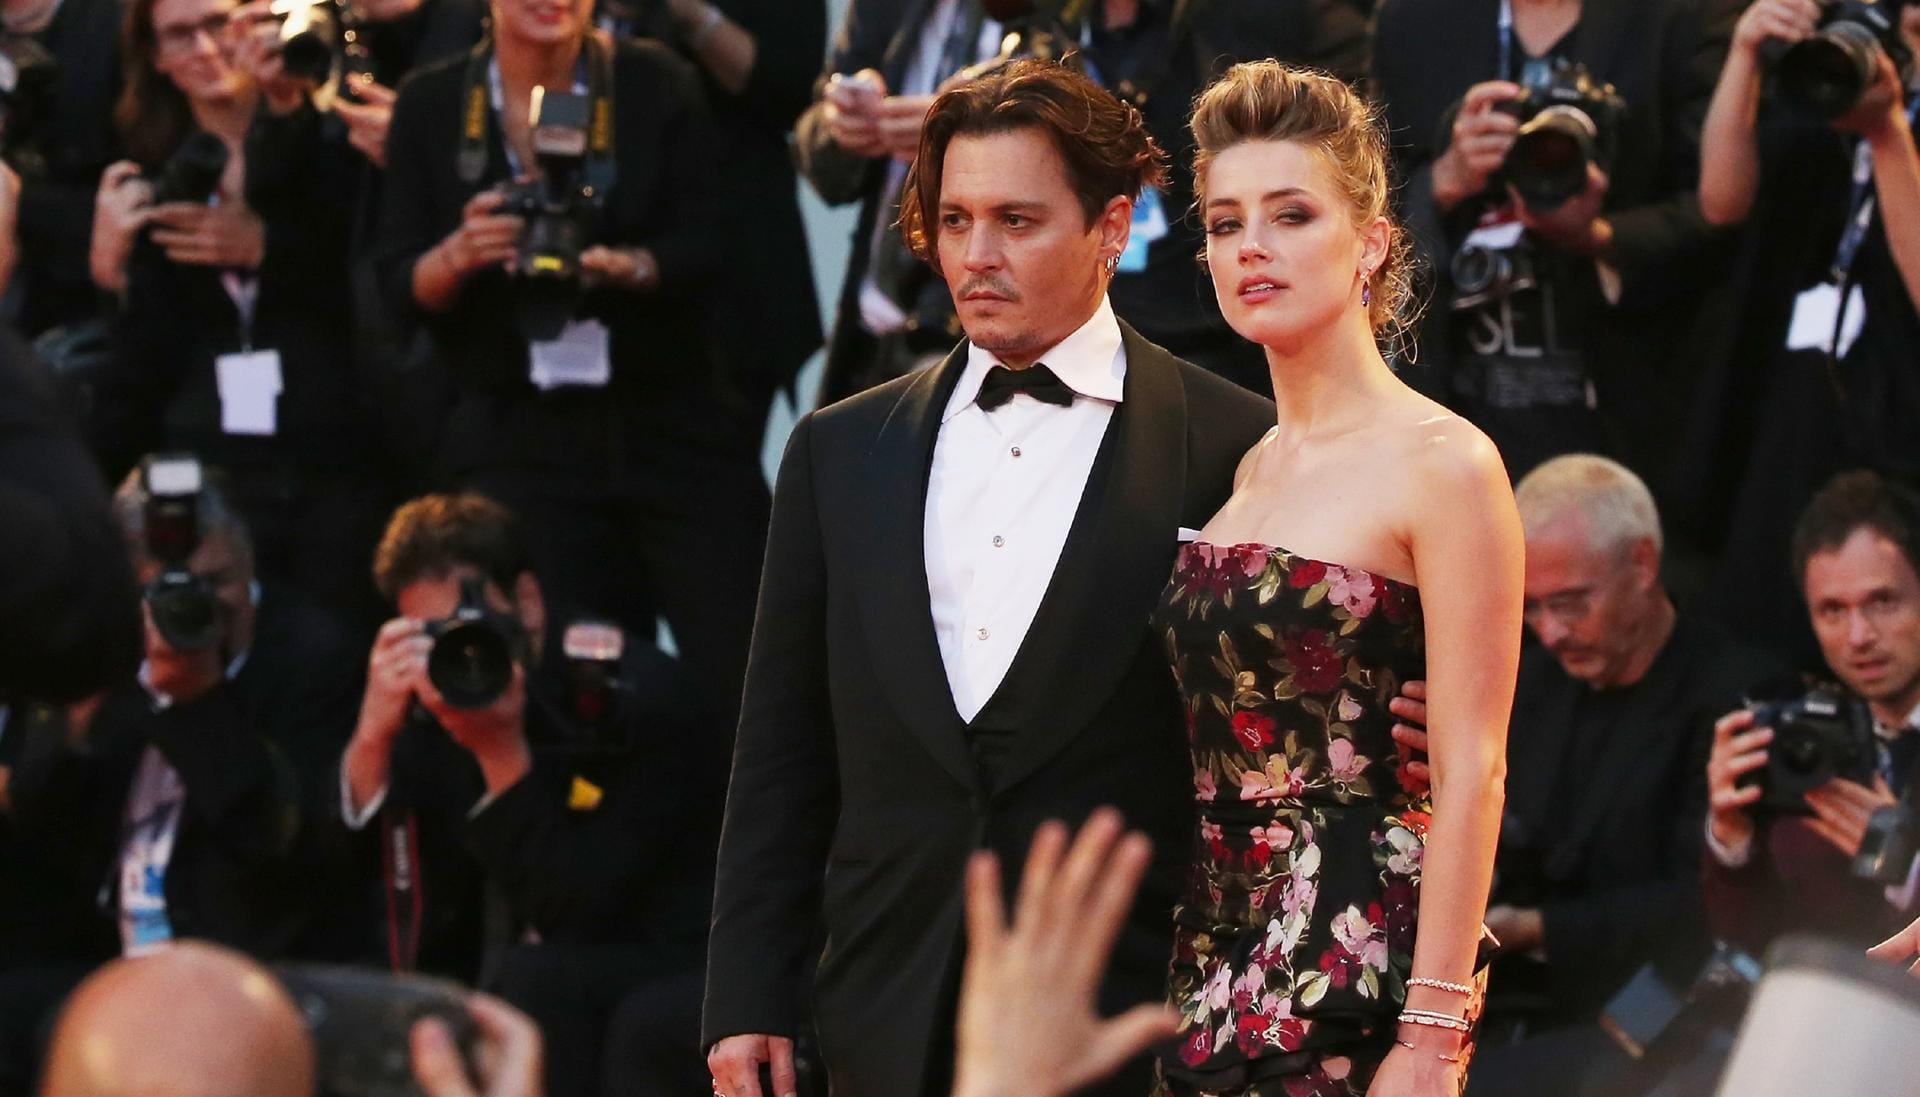 2012 ging Johnny Depp eine Beziehung mit Amber Heard ein.